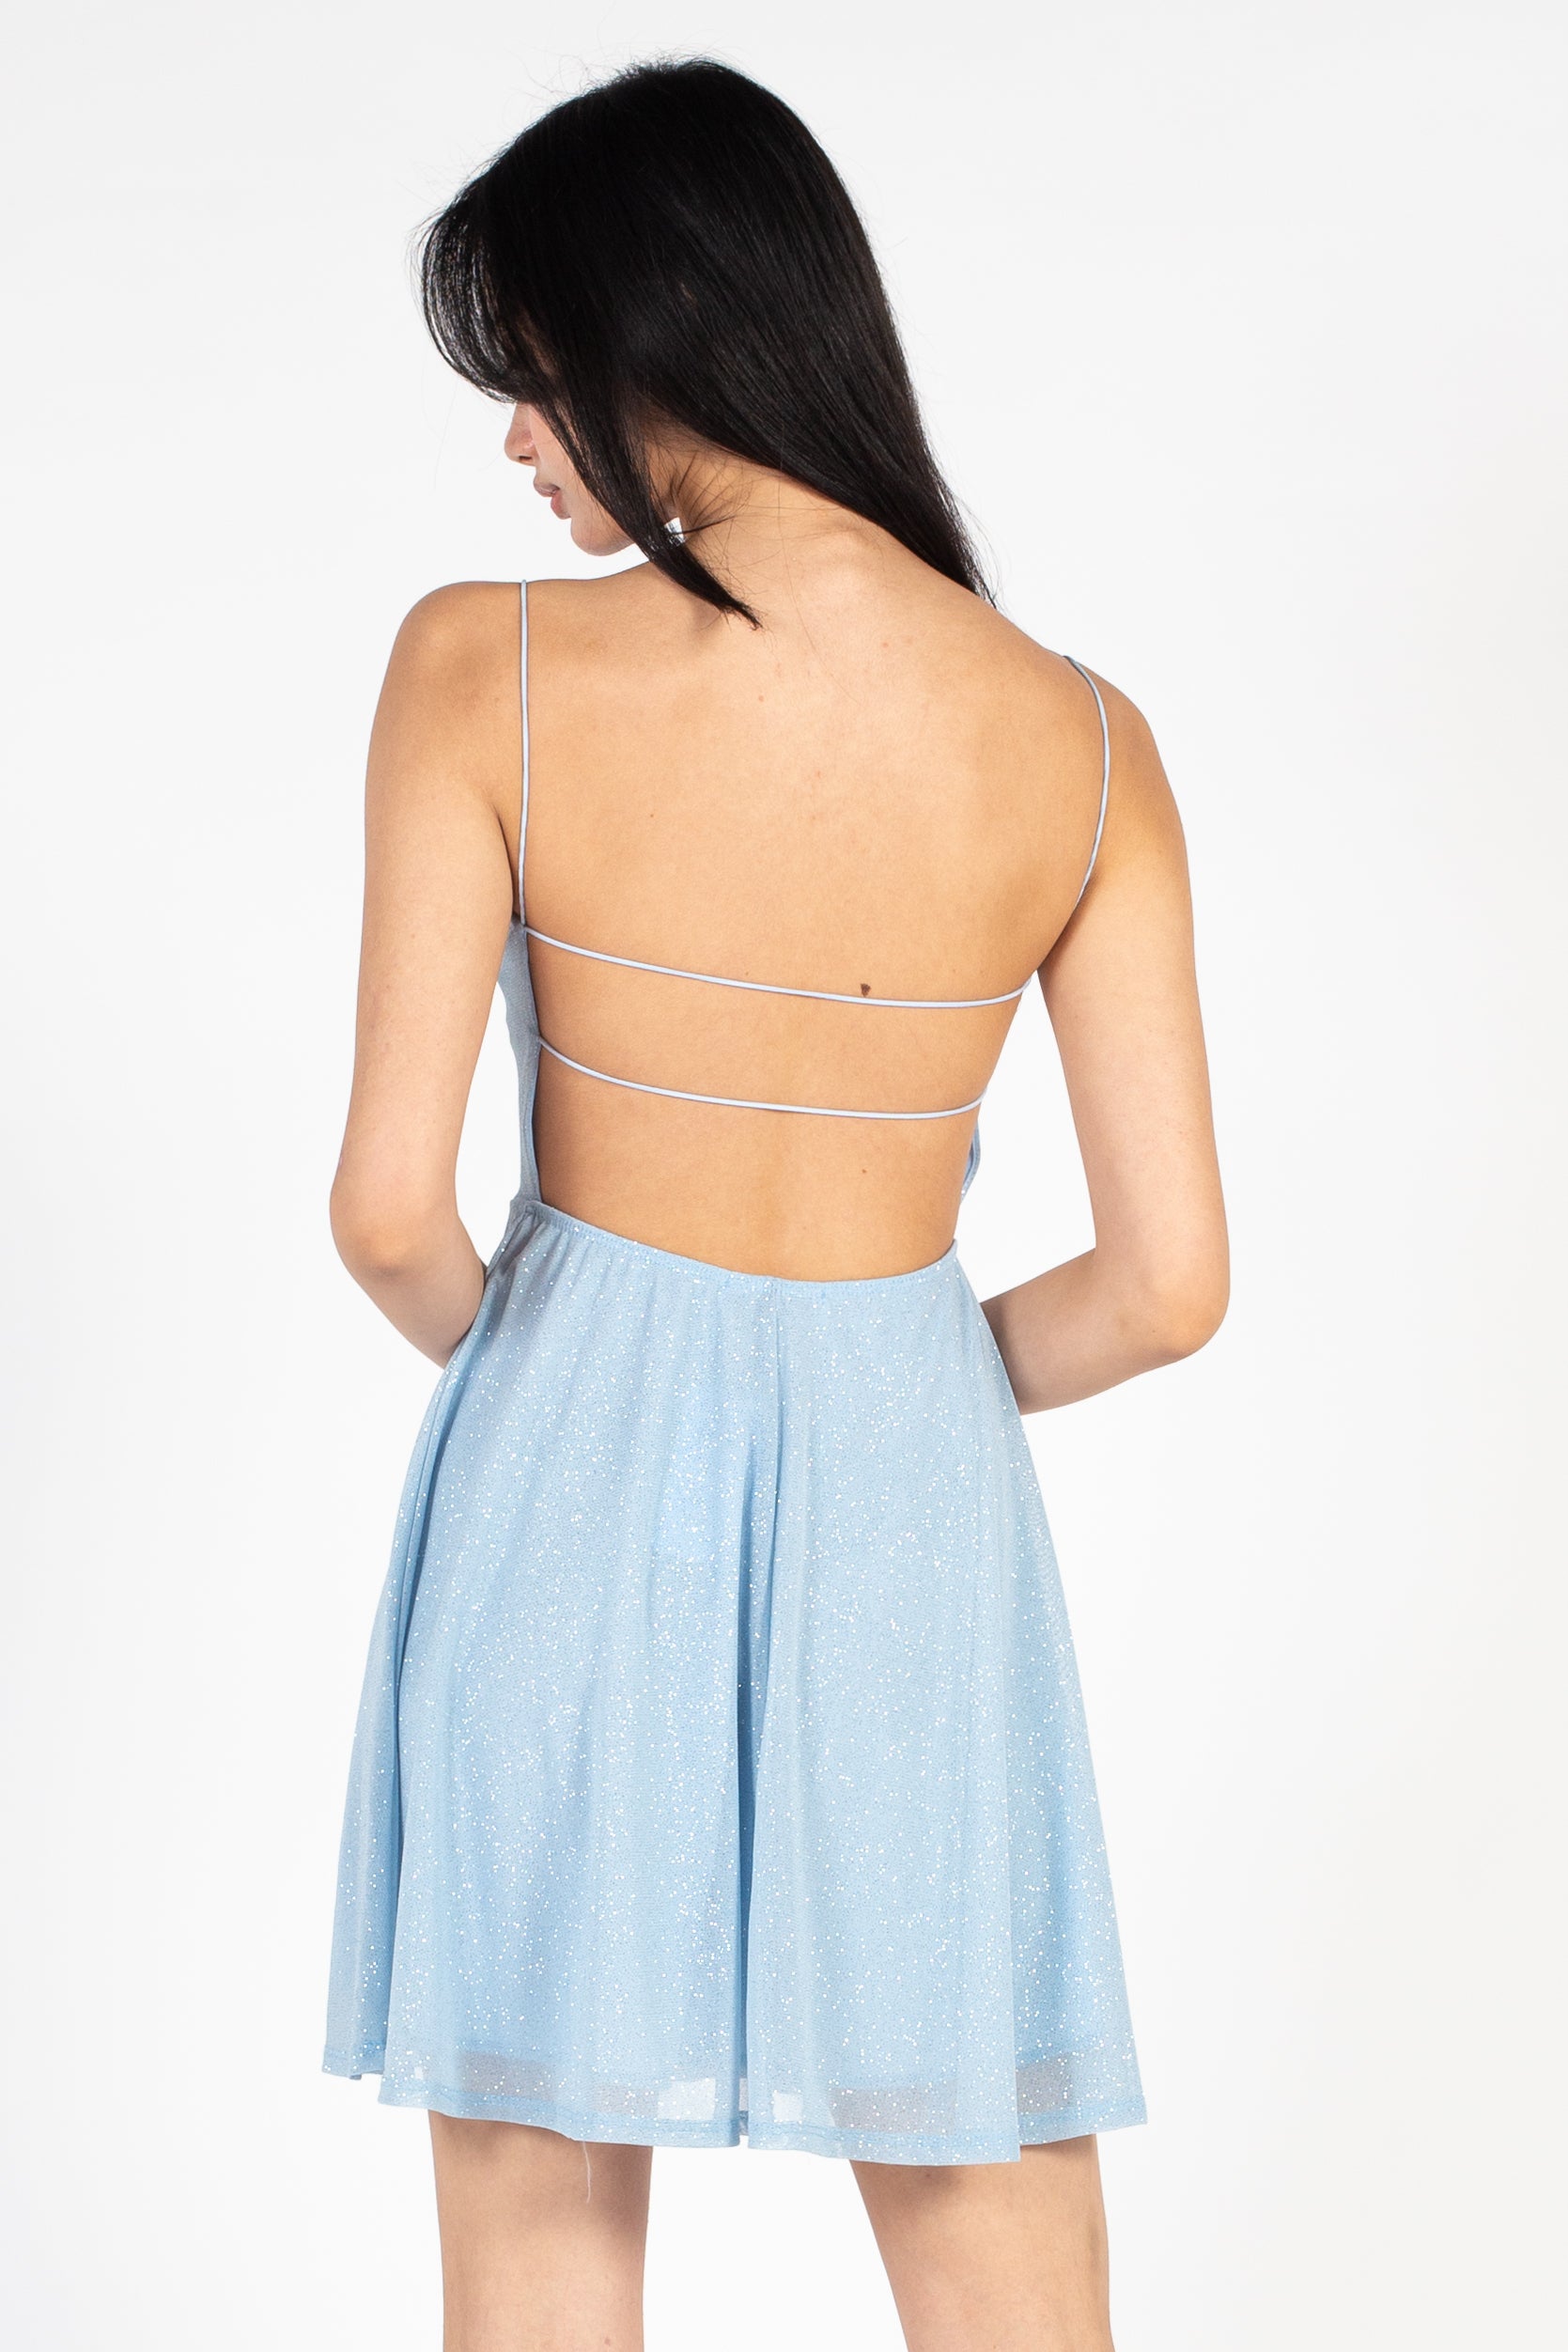 Alice Shimmer Strap-Back Mini Dress